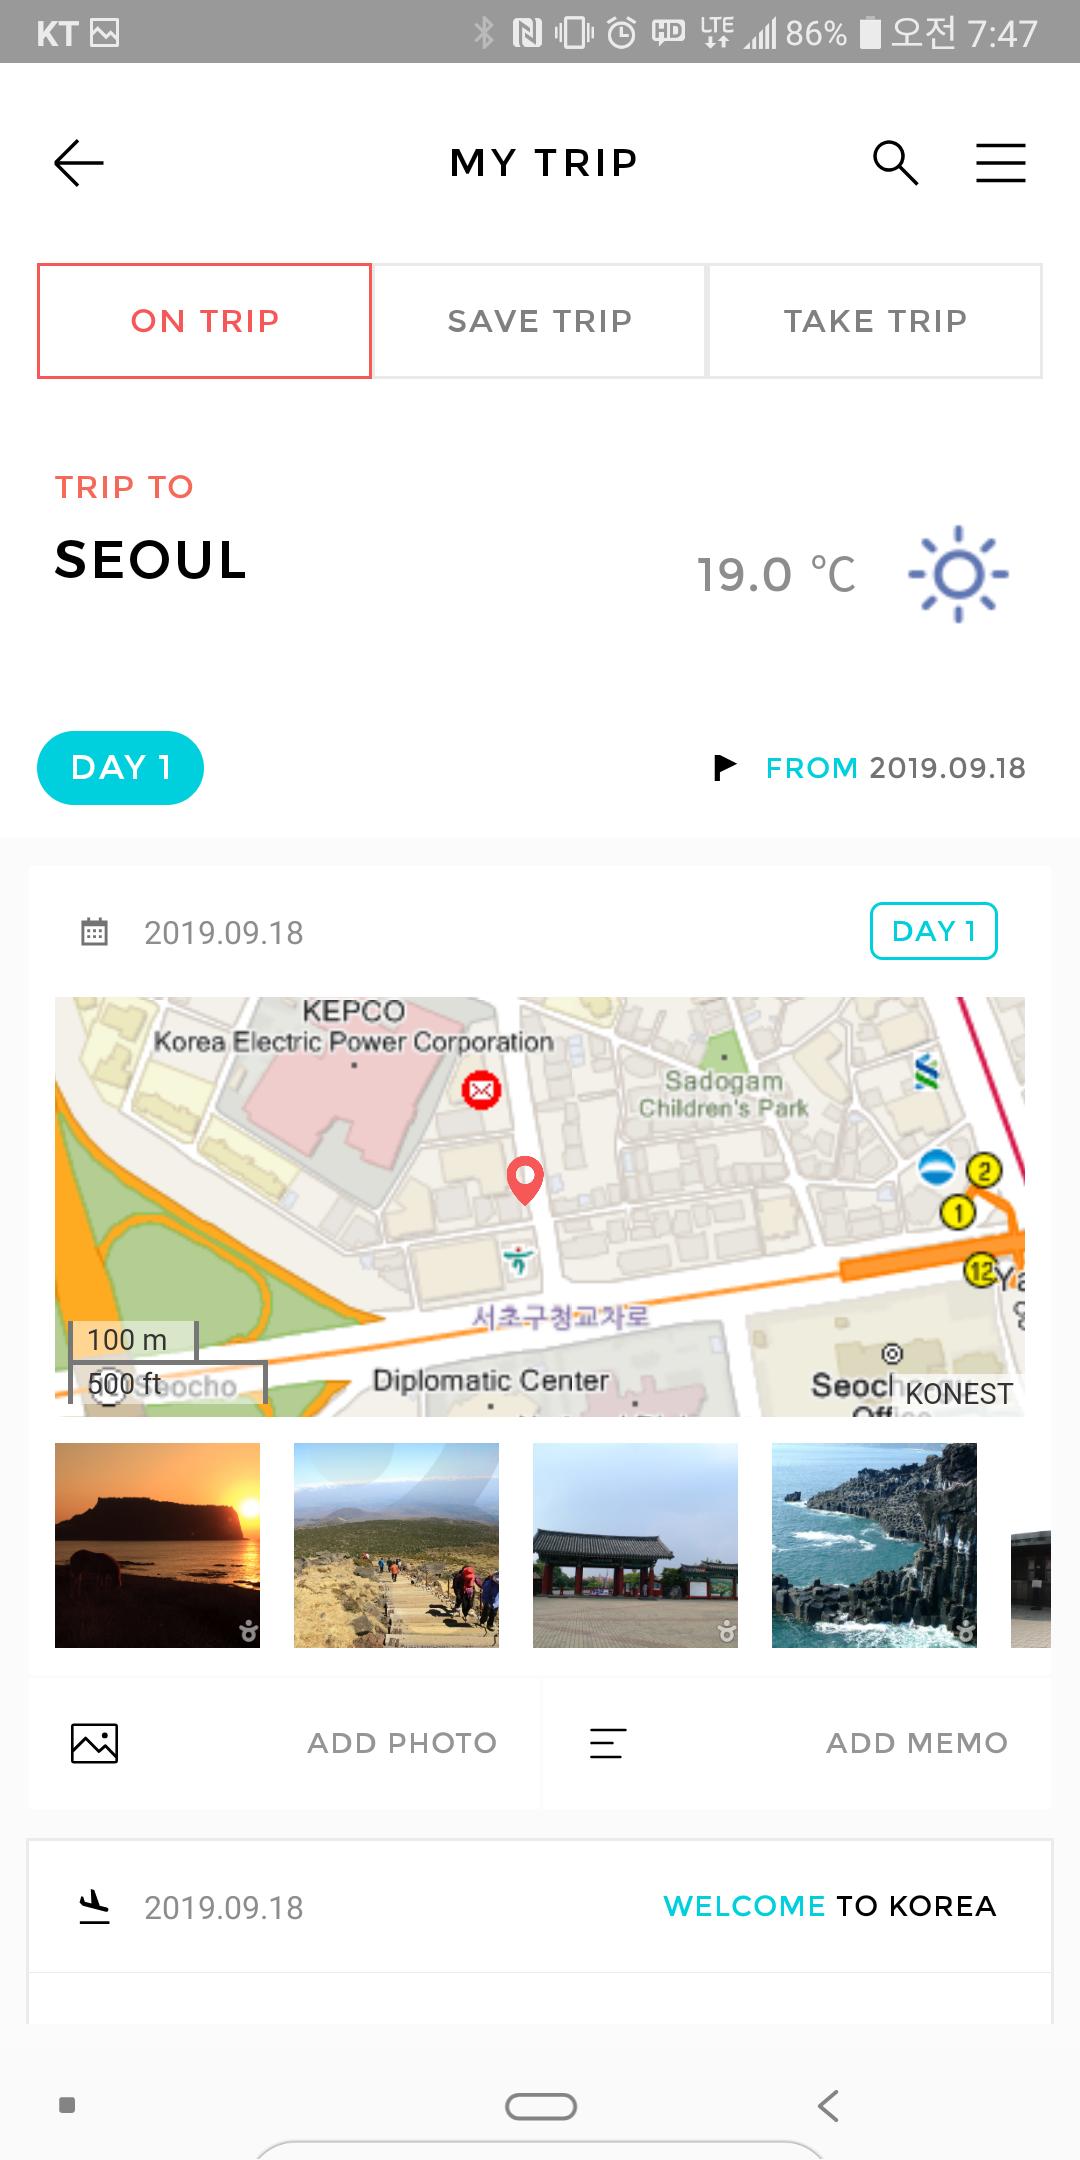 Visit Korea : Official Guide 5.1.9 Screenshot 5